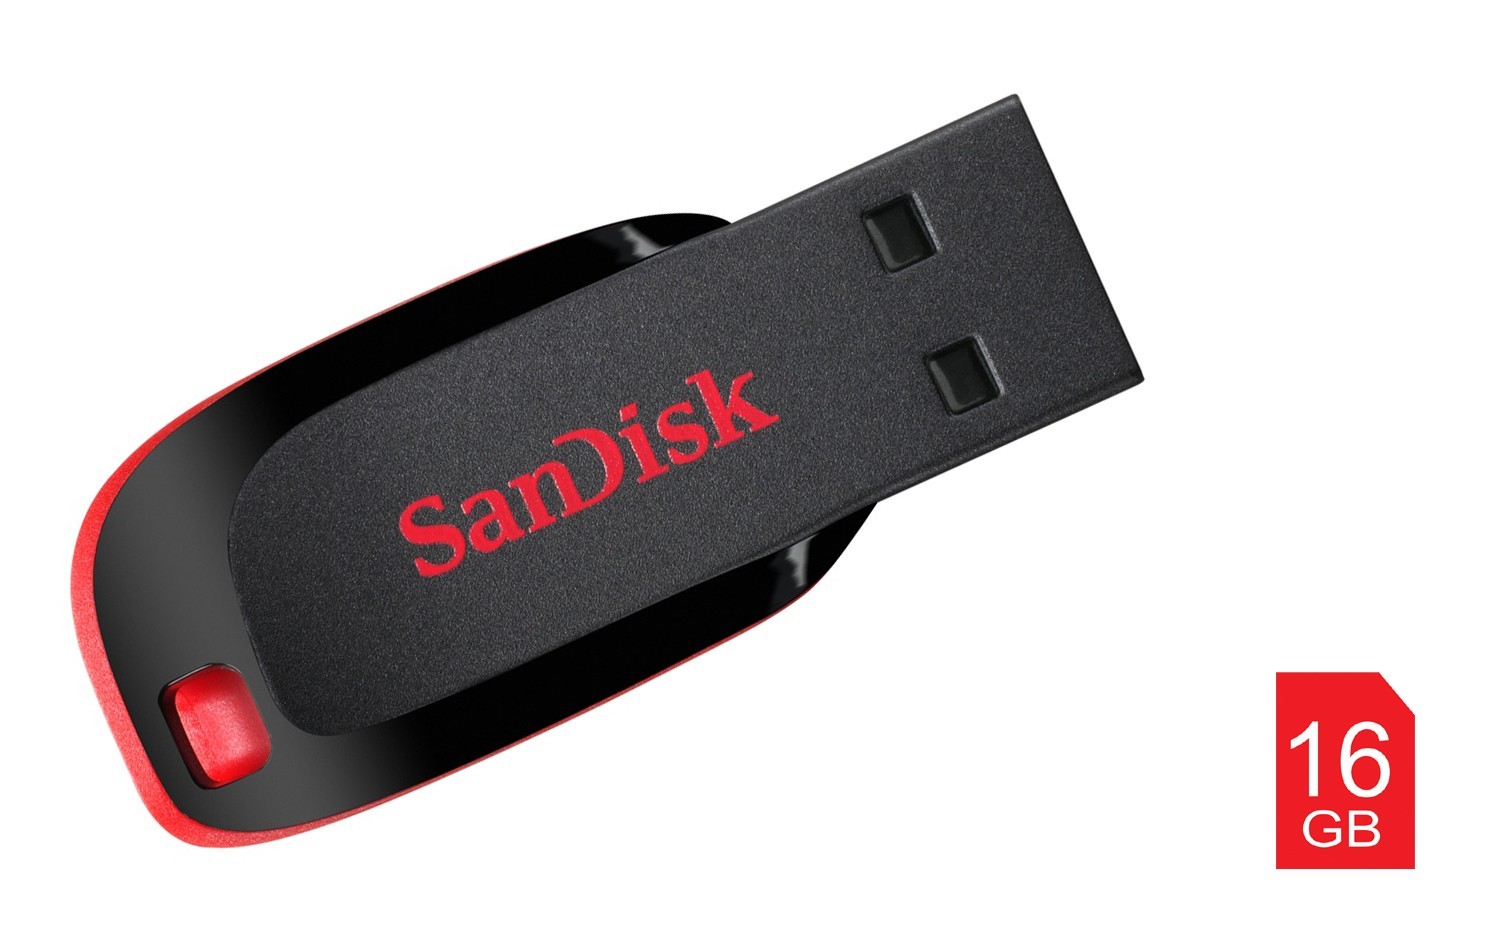 Stick memorie Sandisk Cruzer Blade 16GB cartuseria.ro imagine 2022 cartile.ro